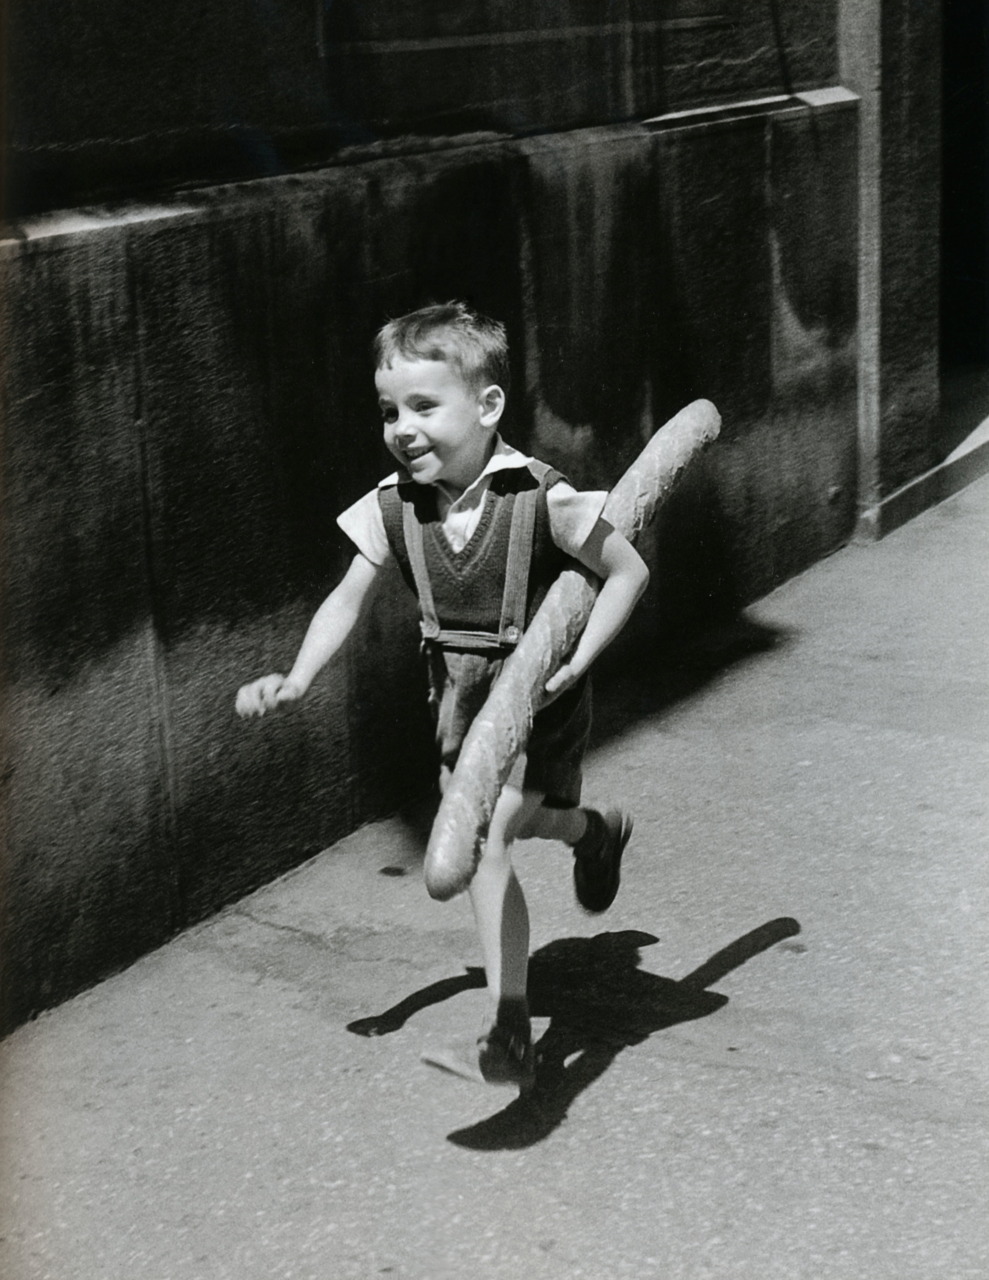 Happiness …!
Willy Ronis
Le Petit Parisien - “The Little Parisian”, Paris, 1952.